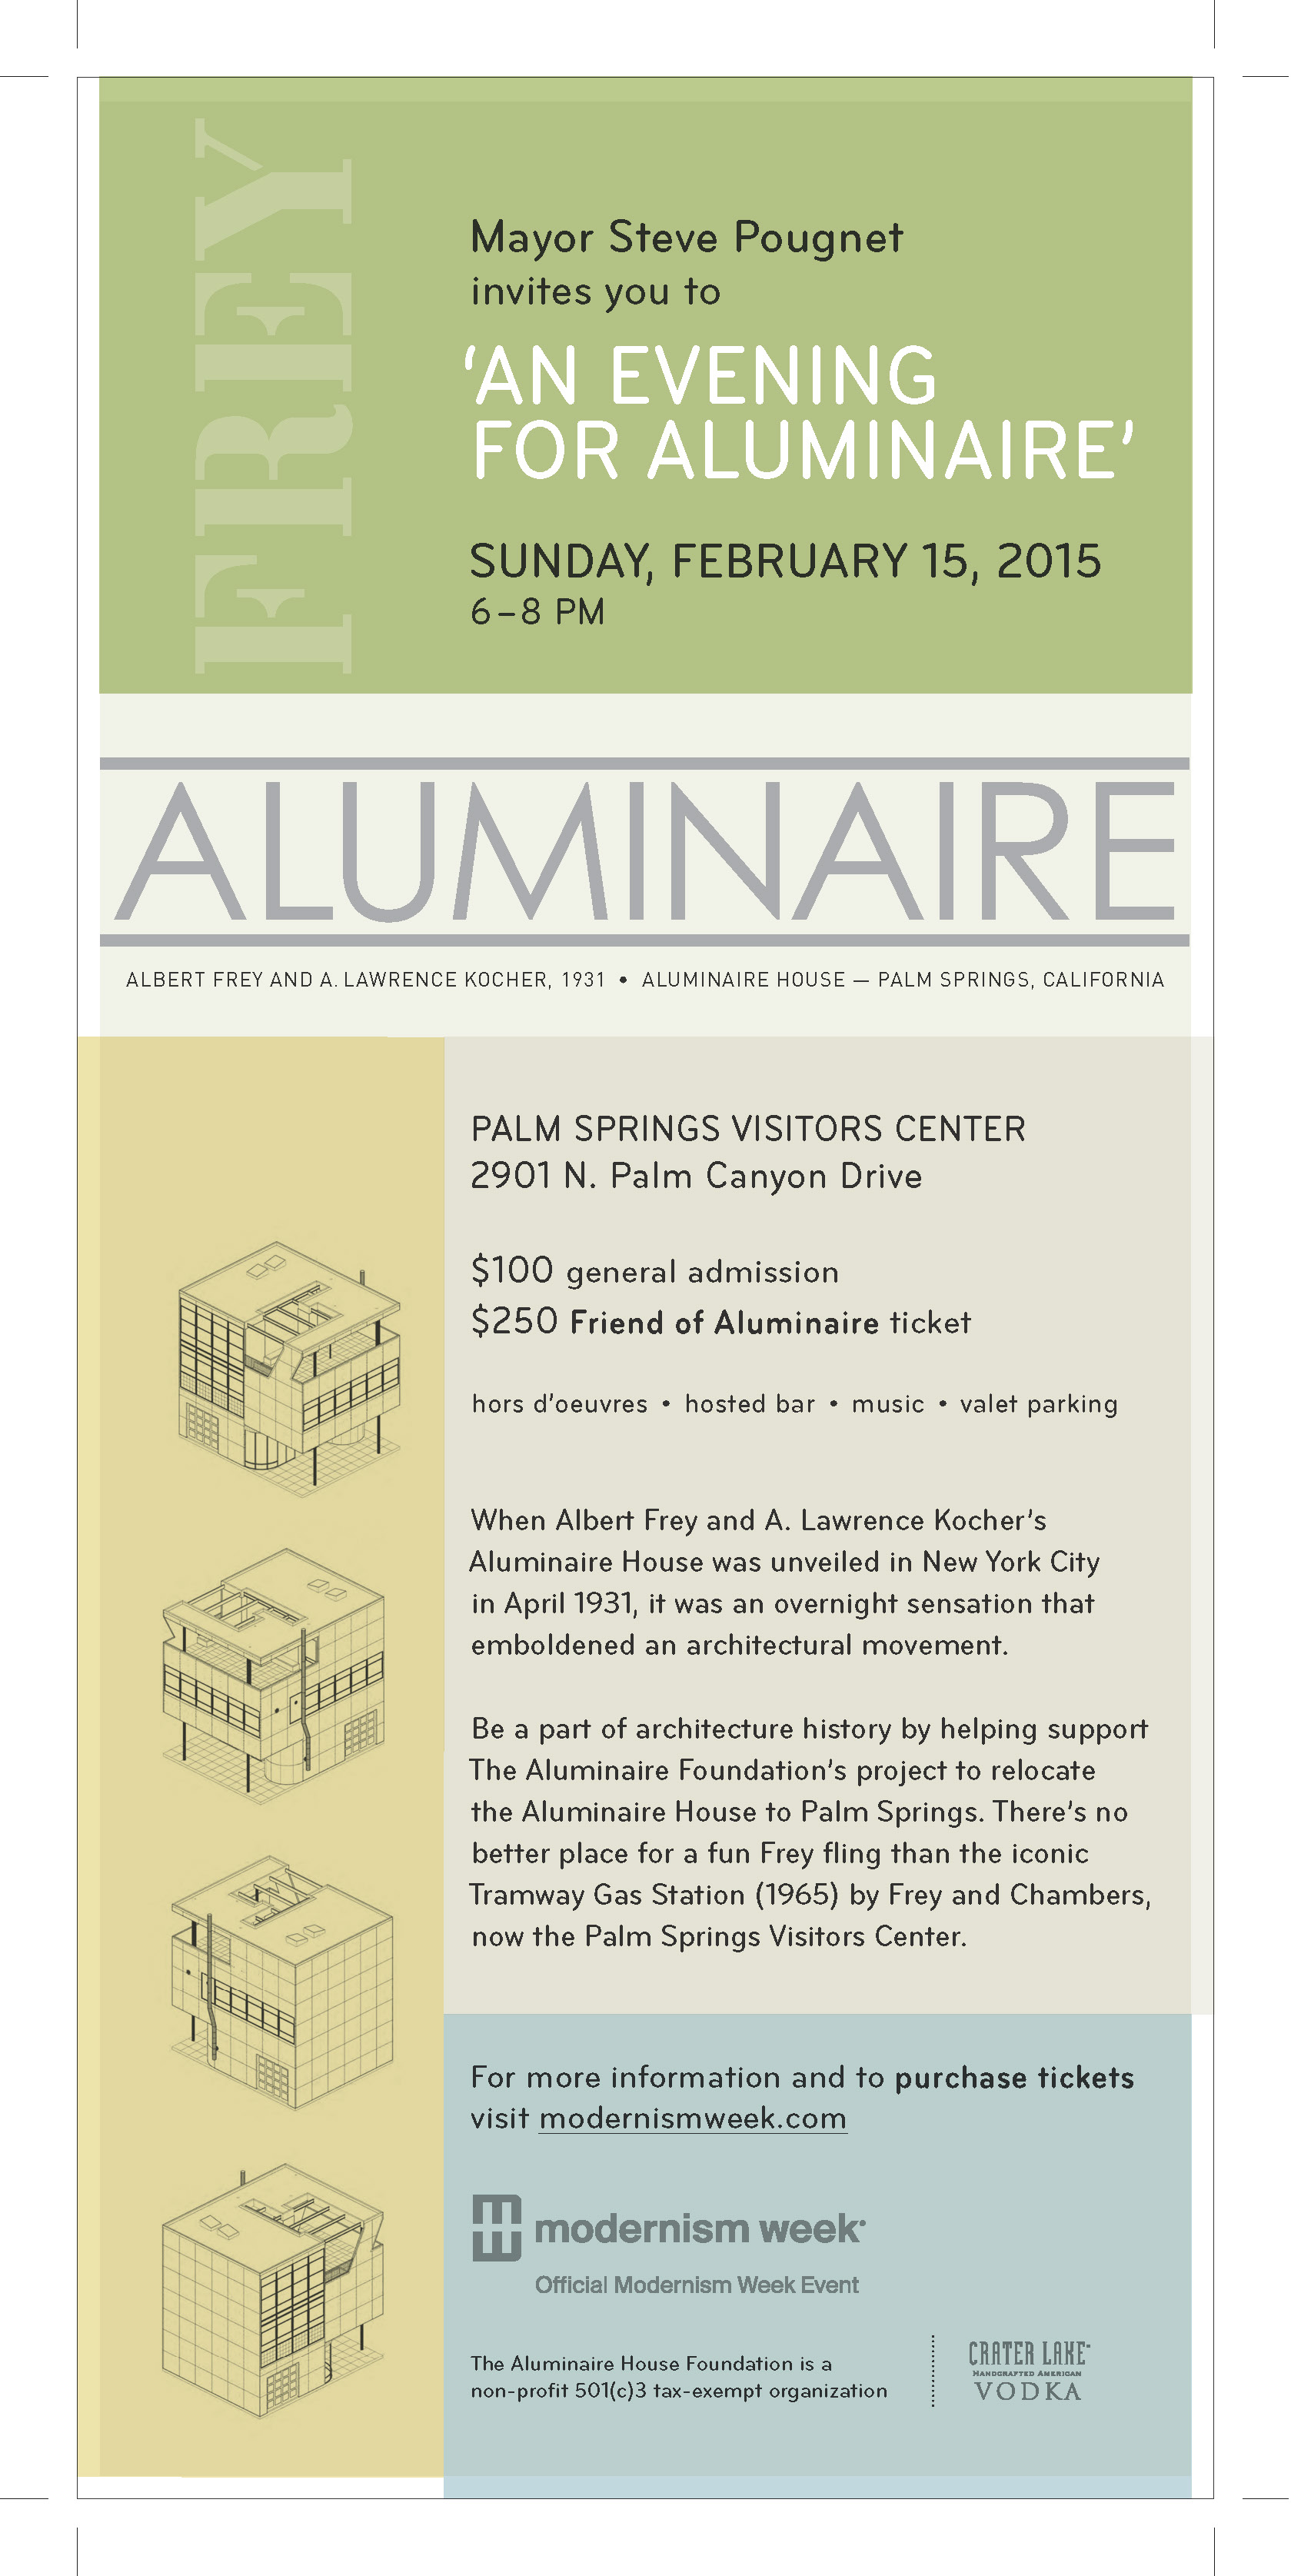 Aluminaire event graphic